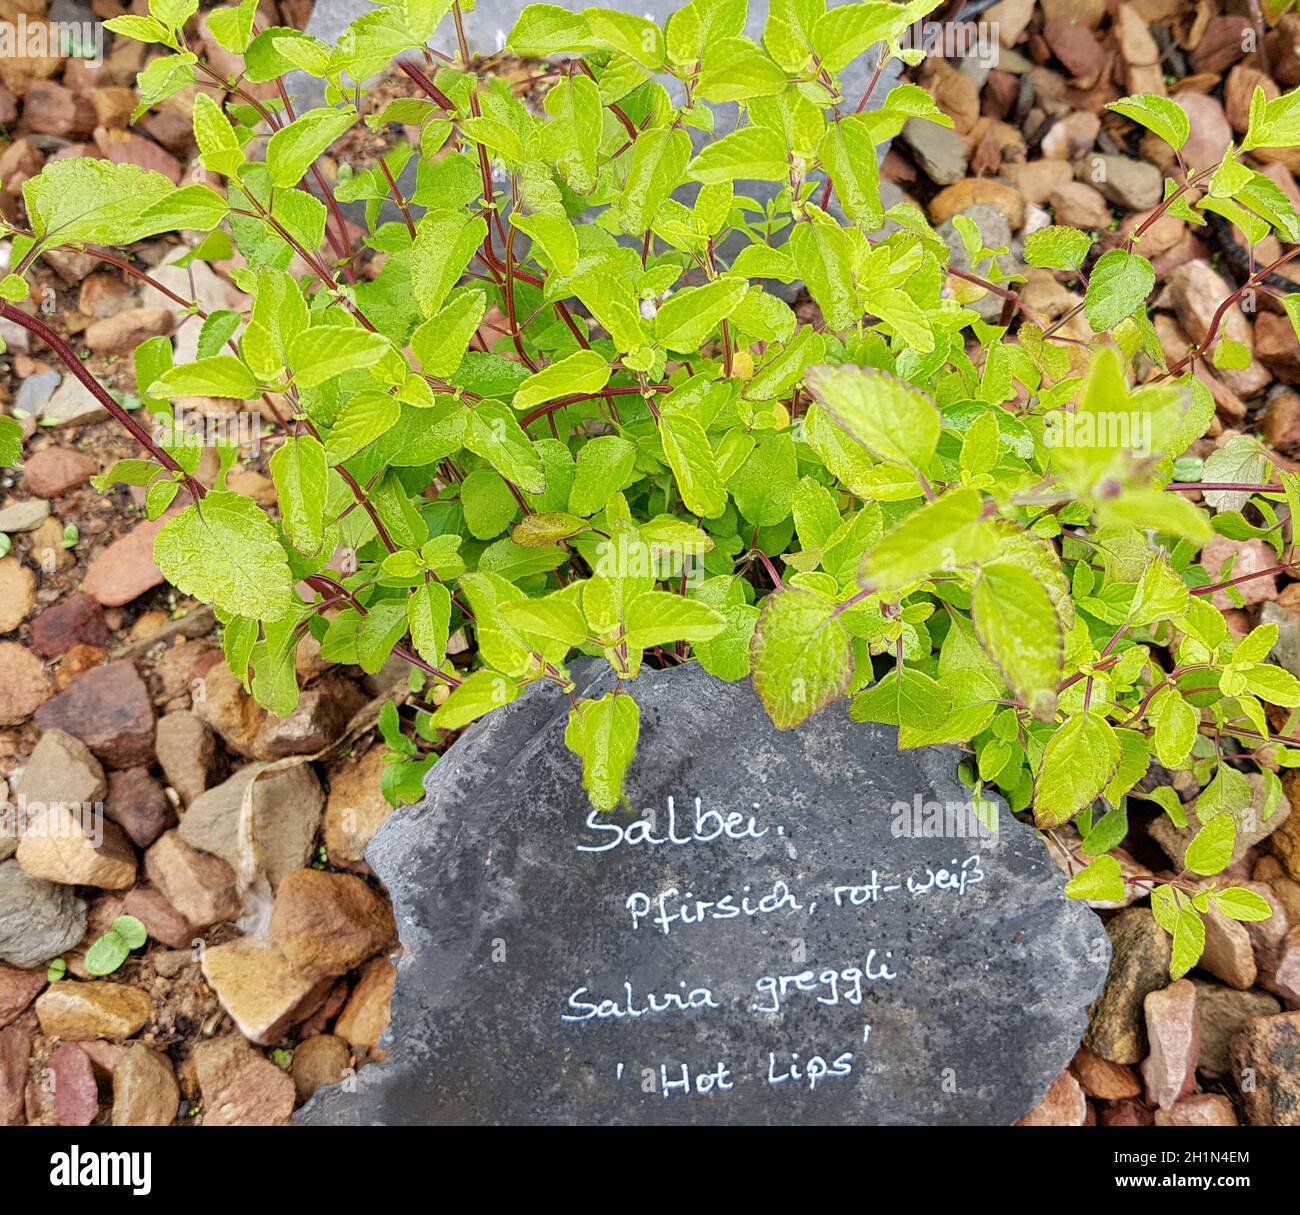 Salbei, Pfirsich-, Salvia greggli, Hot Lips, ist eine wichtige Heilpflanze und eine Duftpflanze mit blauen Blueten.Sie ist eine schoene Staude und wi Banque D'Images